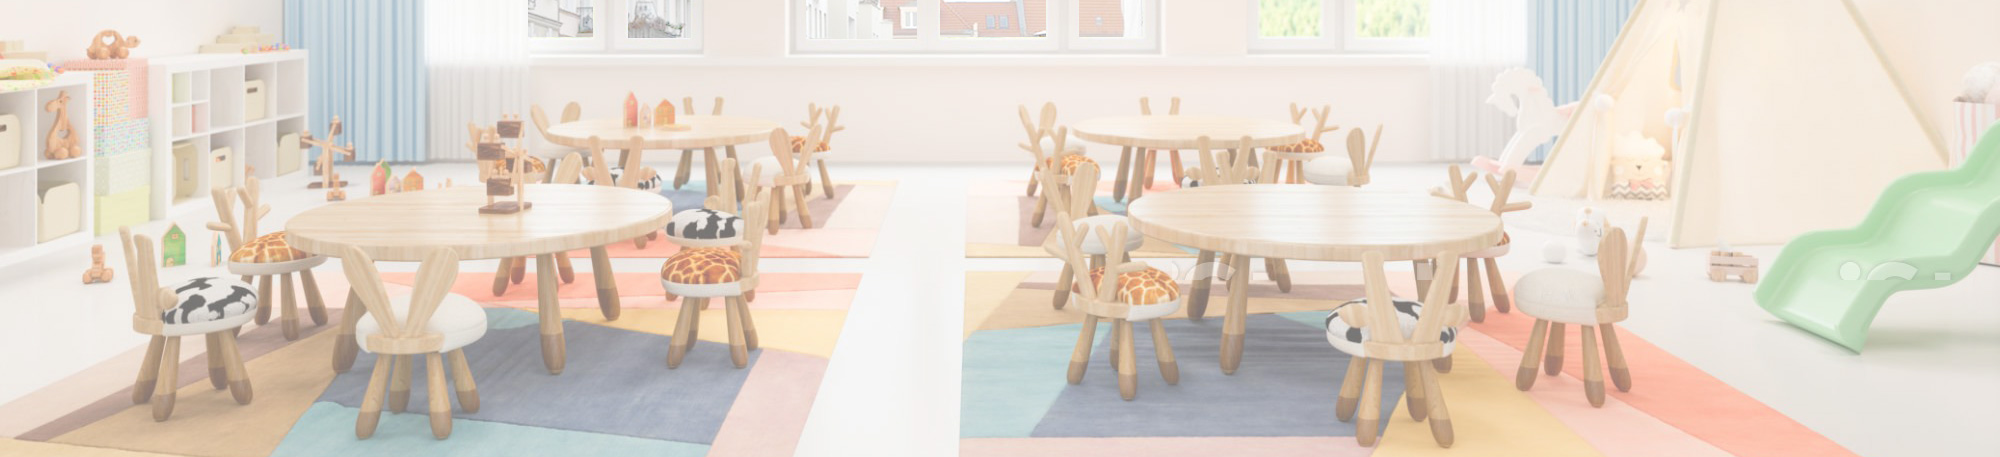 Foto mit Tischen und Stühlen in einem Kindergarten